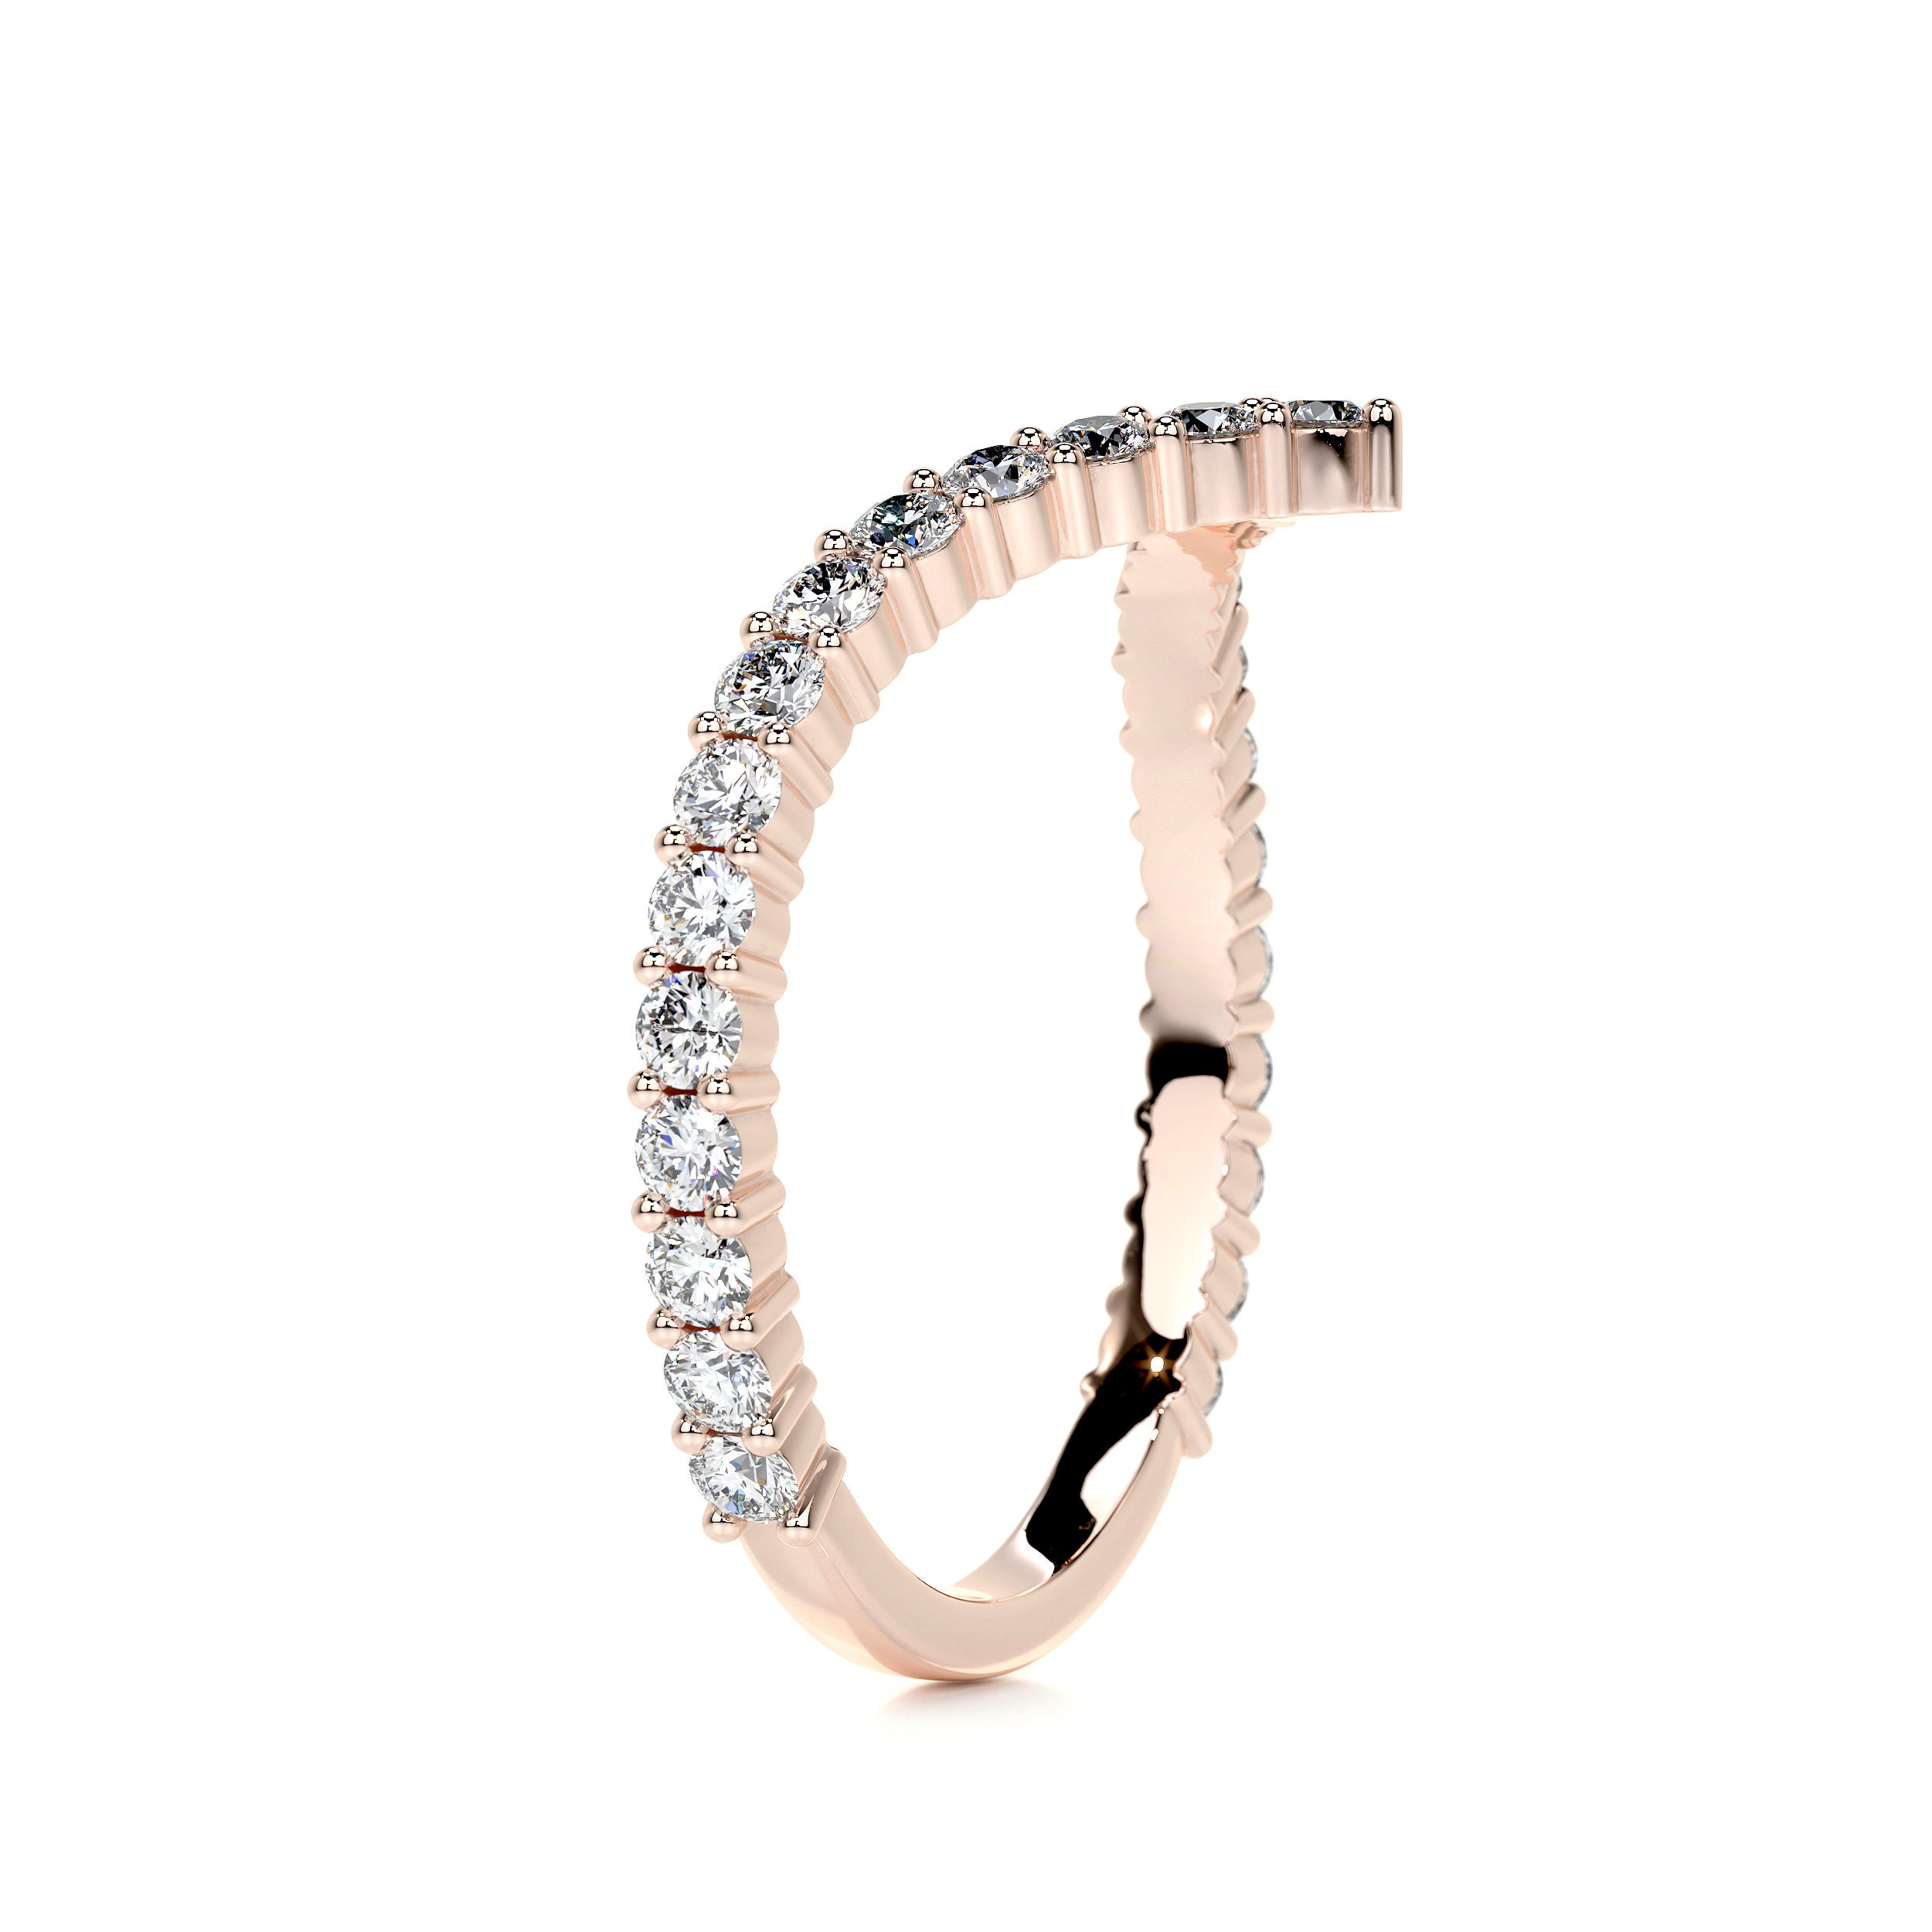 Dawn Diamond Wedding Ring   (0.50 Carat) -14K Rose Gold